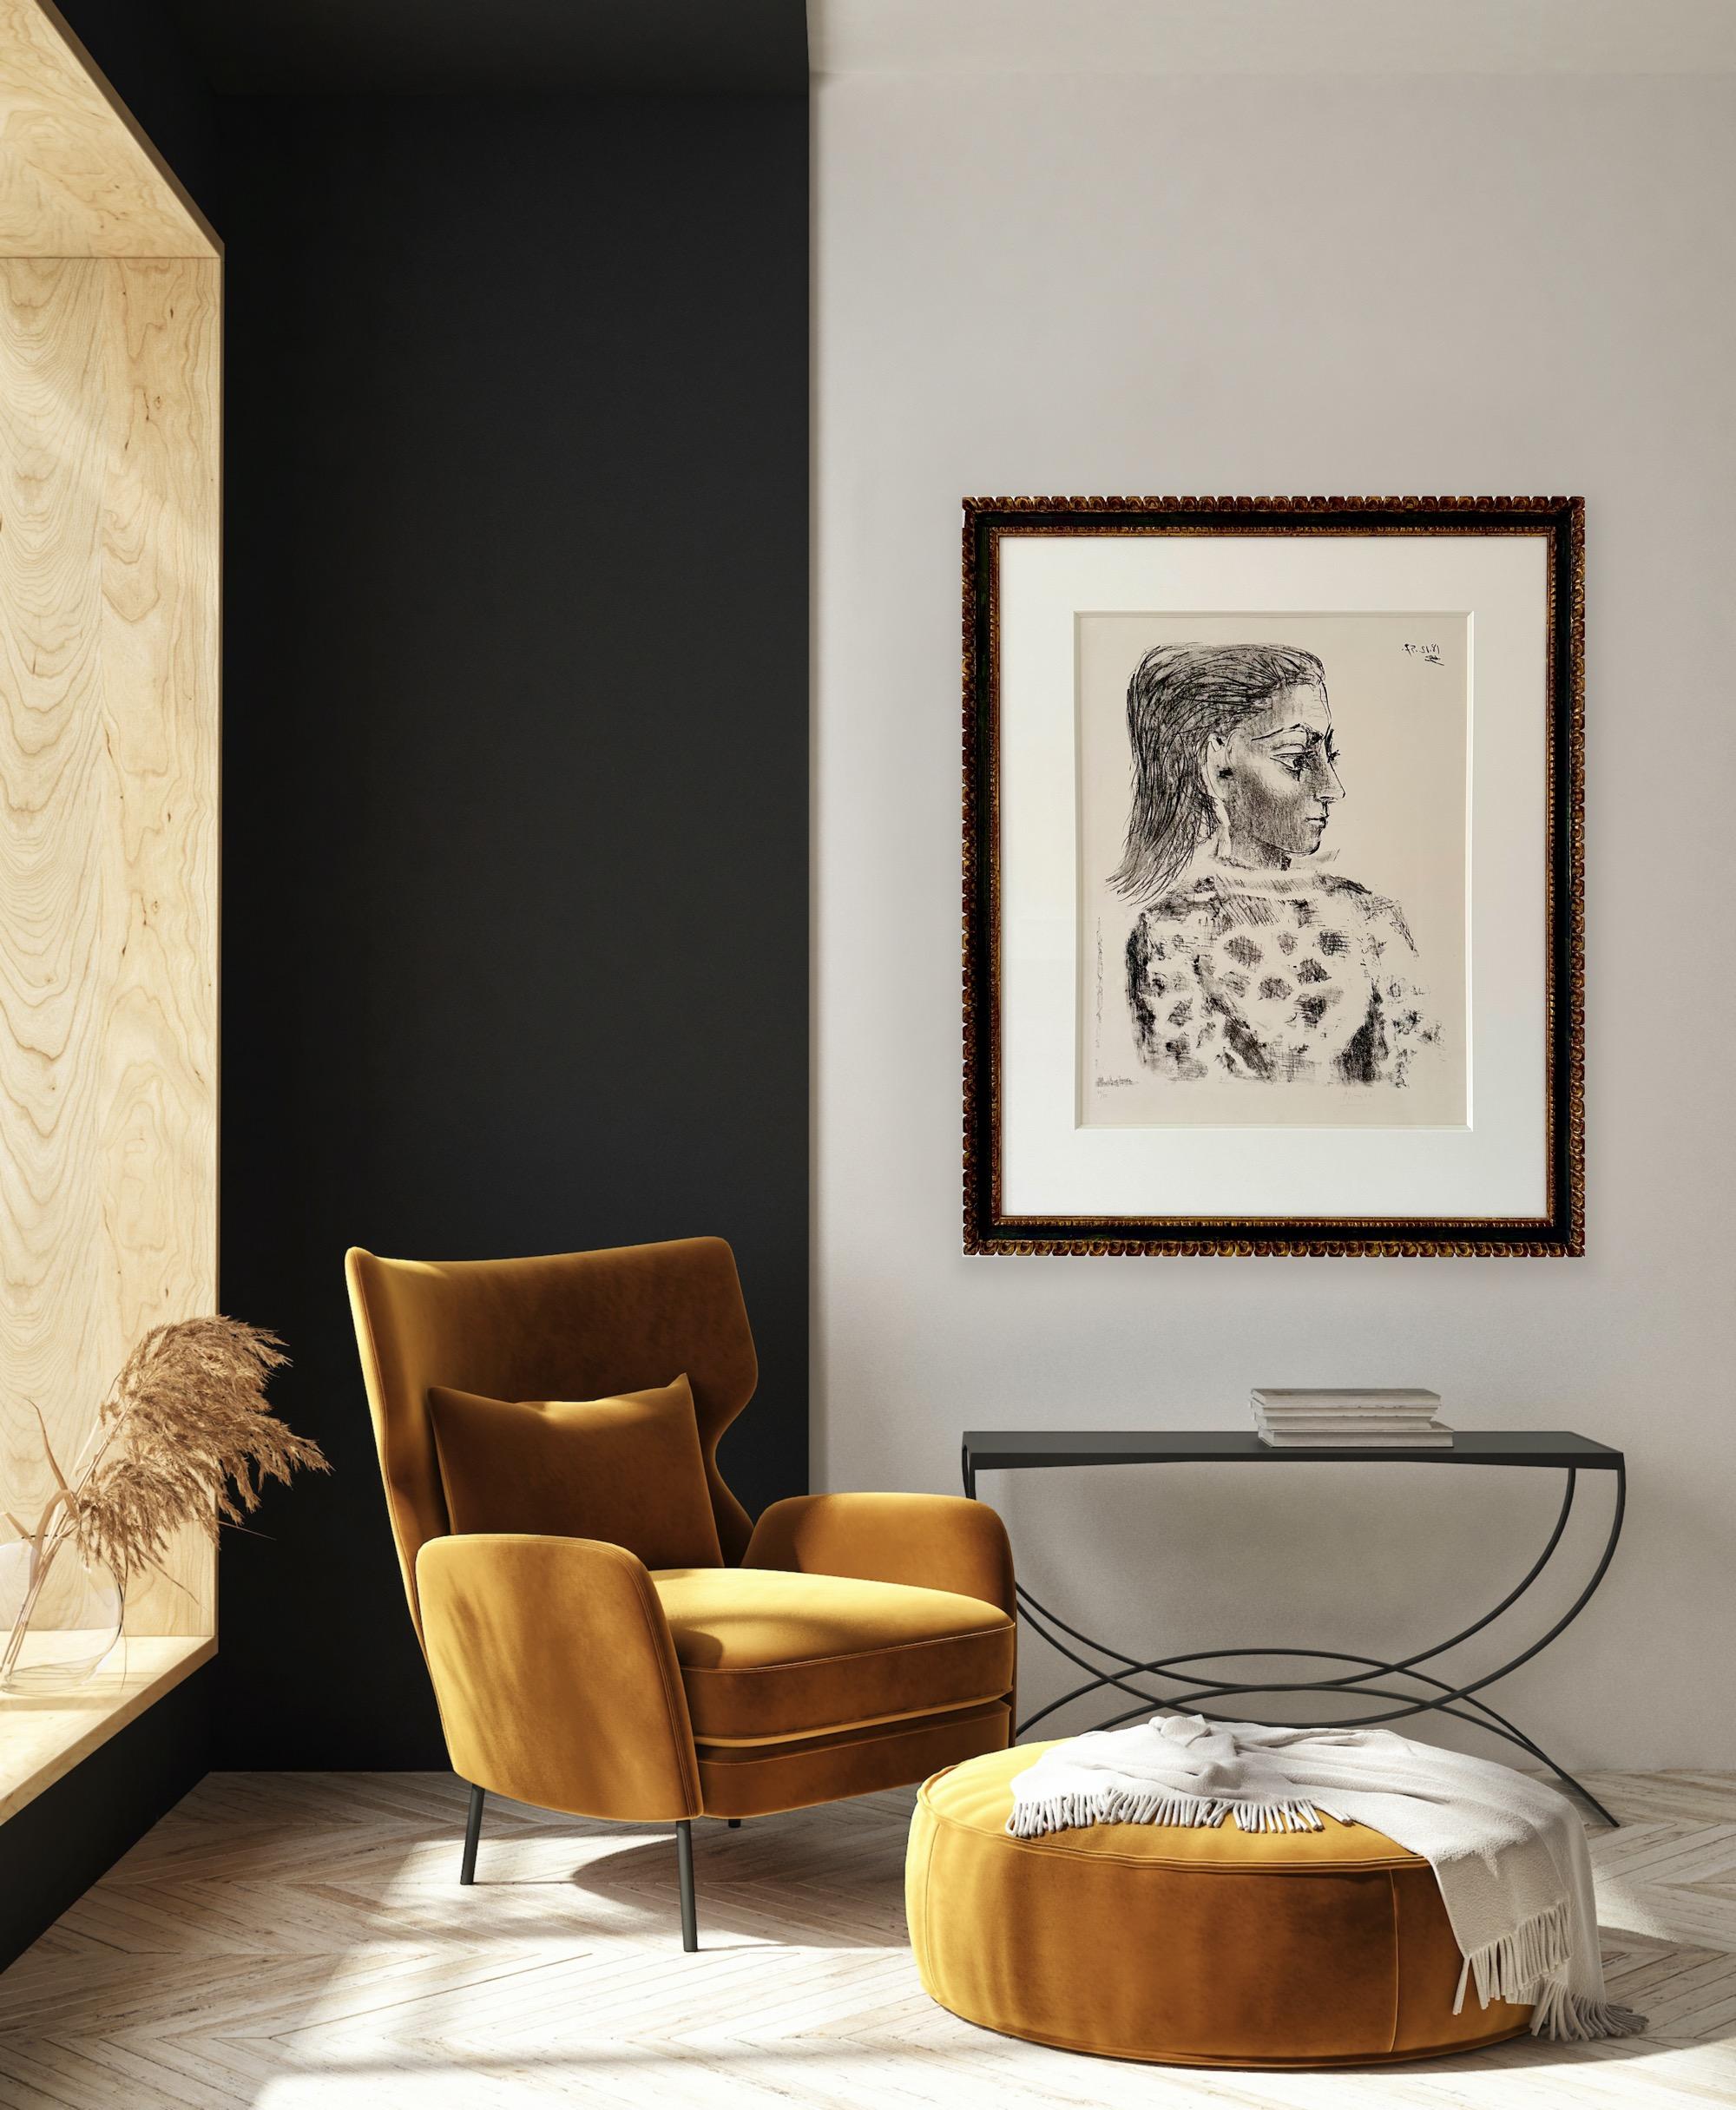 Buste au corsage à carreaux - Print by Pablo Picasso